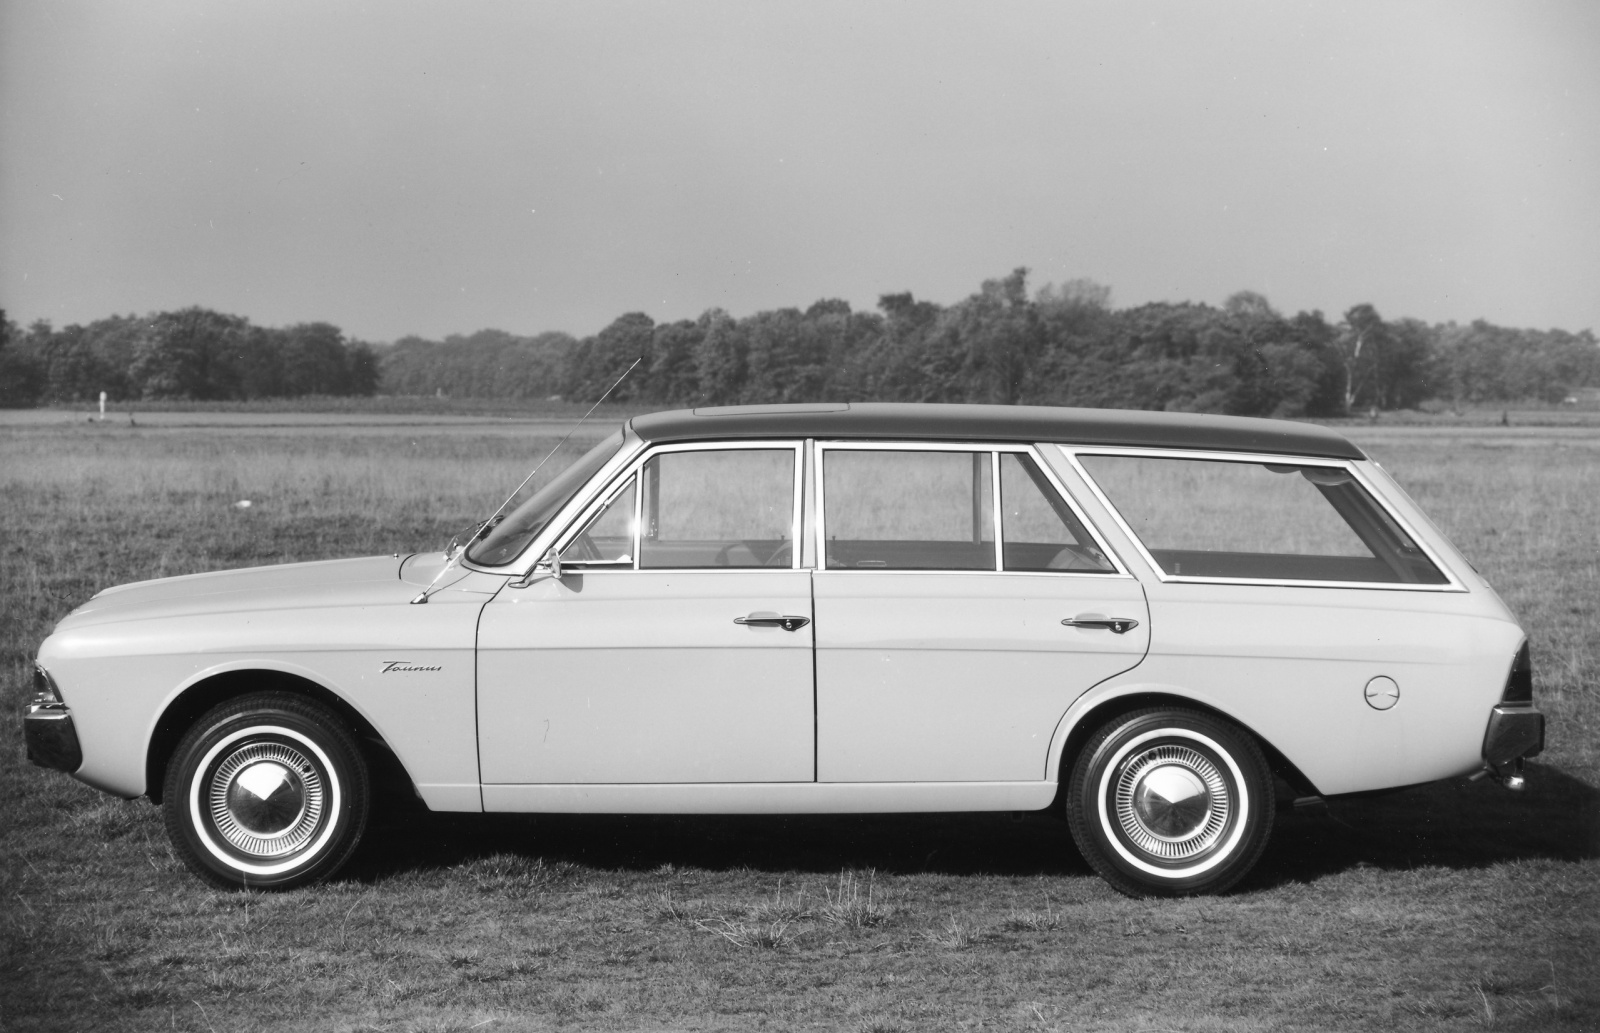 Taunus 17m Turnier (1965) - Foto eines Ford PKW-Modells